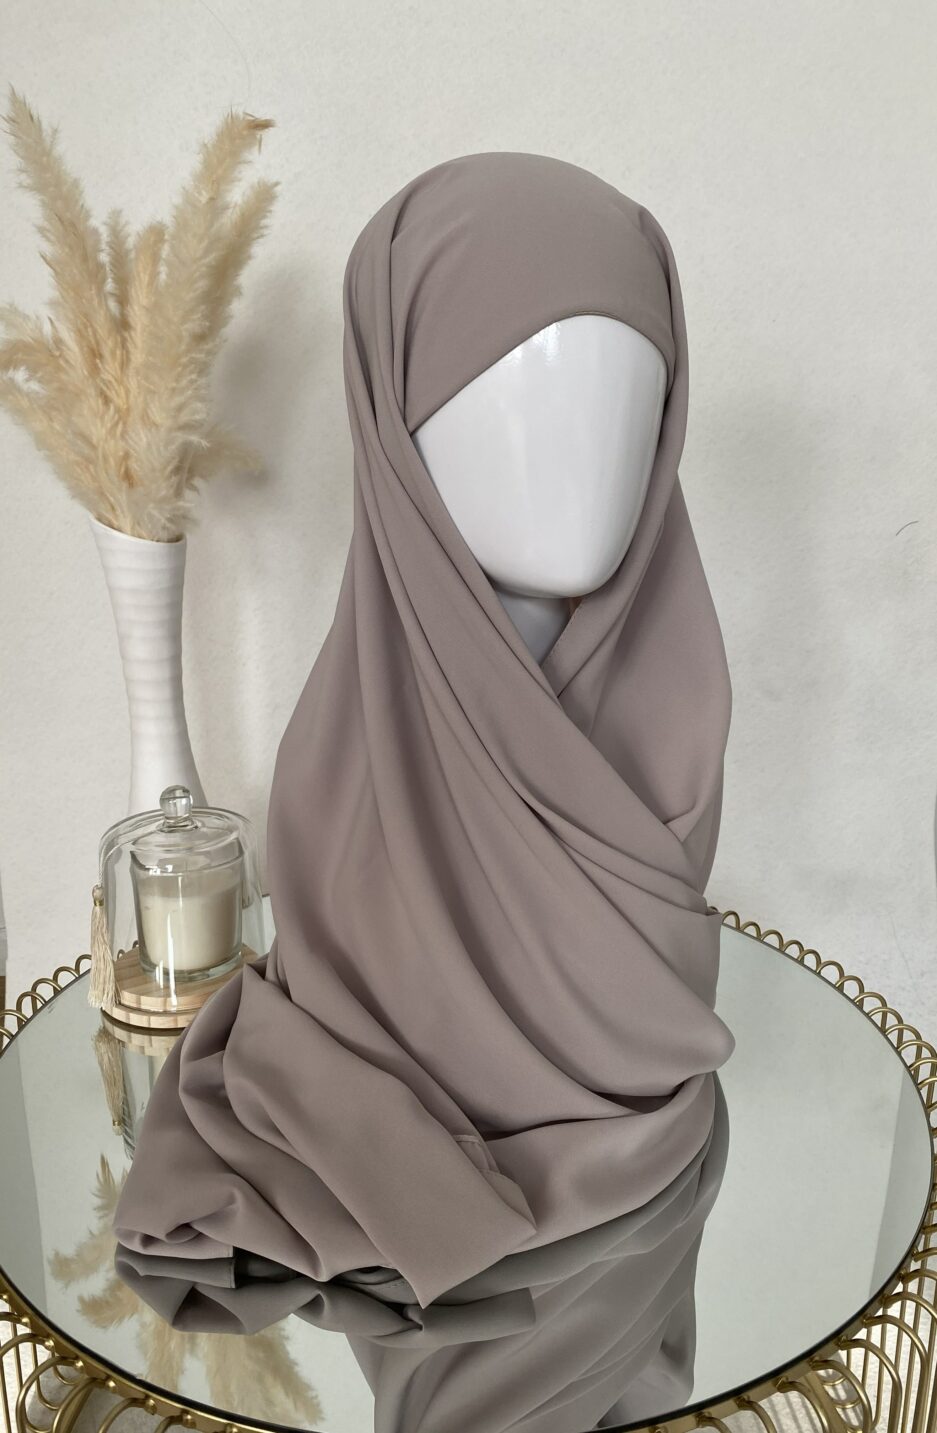 Vente en ligne hijab beige brun à enfiler avec bonnet, en gros et au détail voile soie de médine de bonne qualité 100% opaque, long, livraison rapide en 24H Nouveau hijab en soie de médine à enfilé avec bonnet intégrer, Cendrijab est situé dans le nord de la France